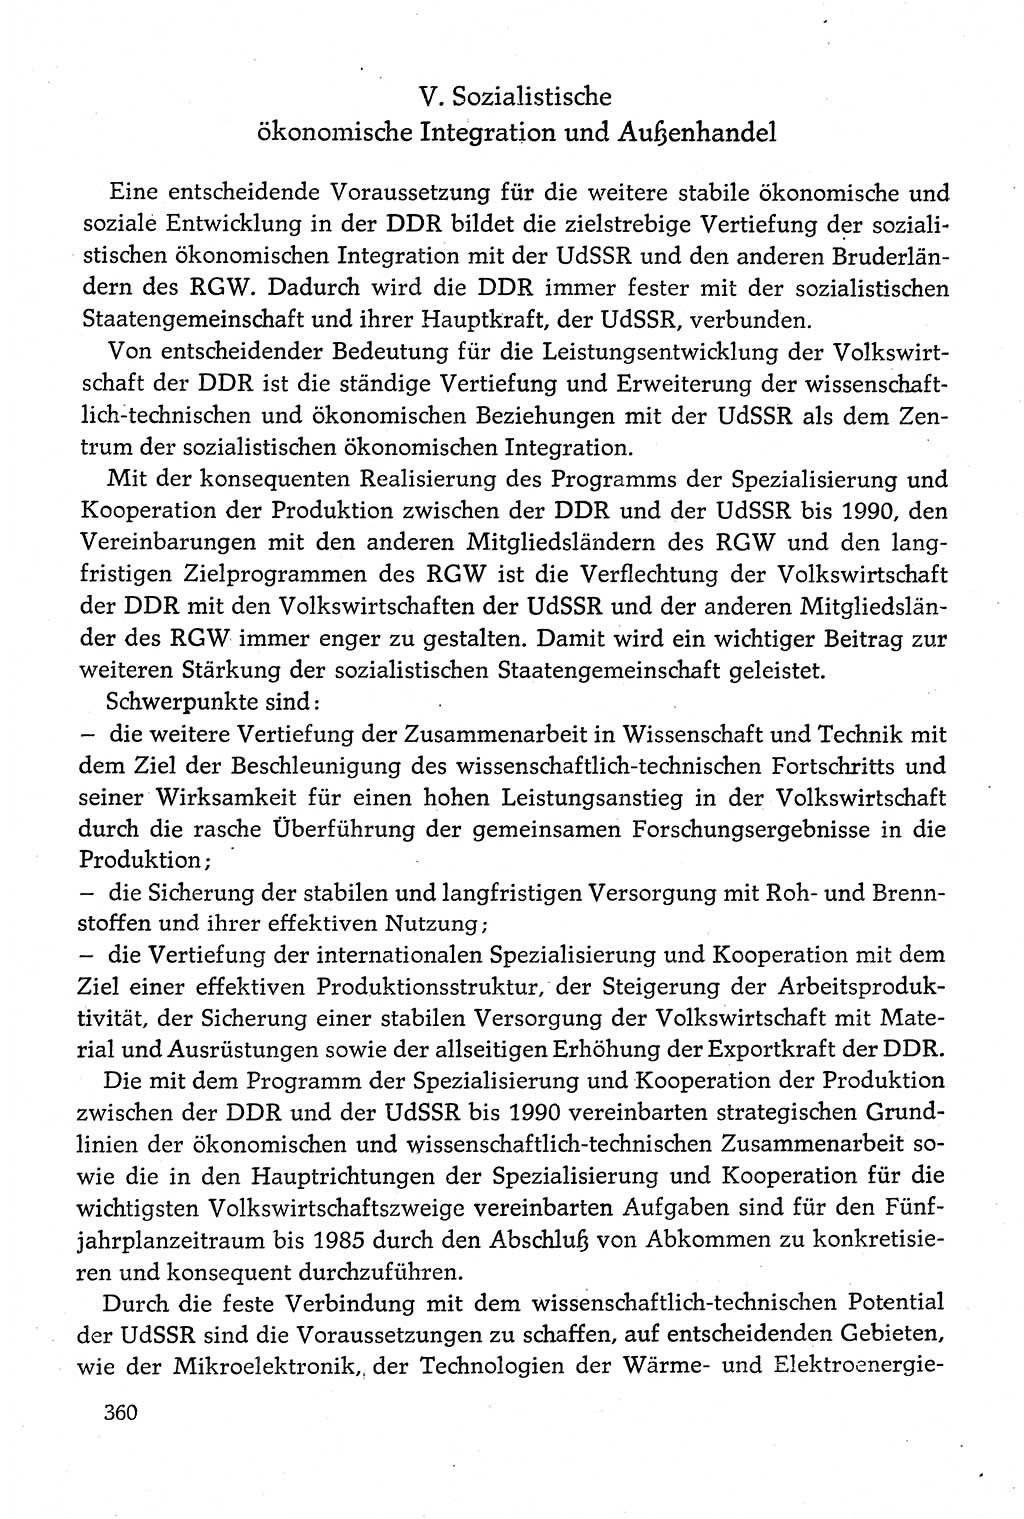 Dokumente der Sozialistischen Einheitspartei Deutschlands (SED) [Deutsche Demokratische Republik (DDR)] 1980-1981, Seite 360 (Dok. SED DDR 1980-1981, S. 360)